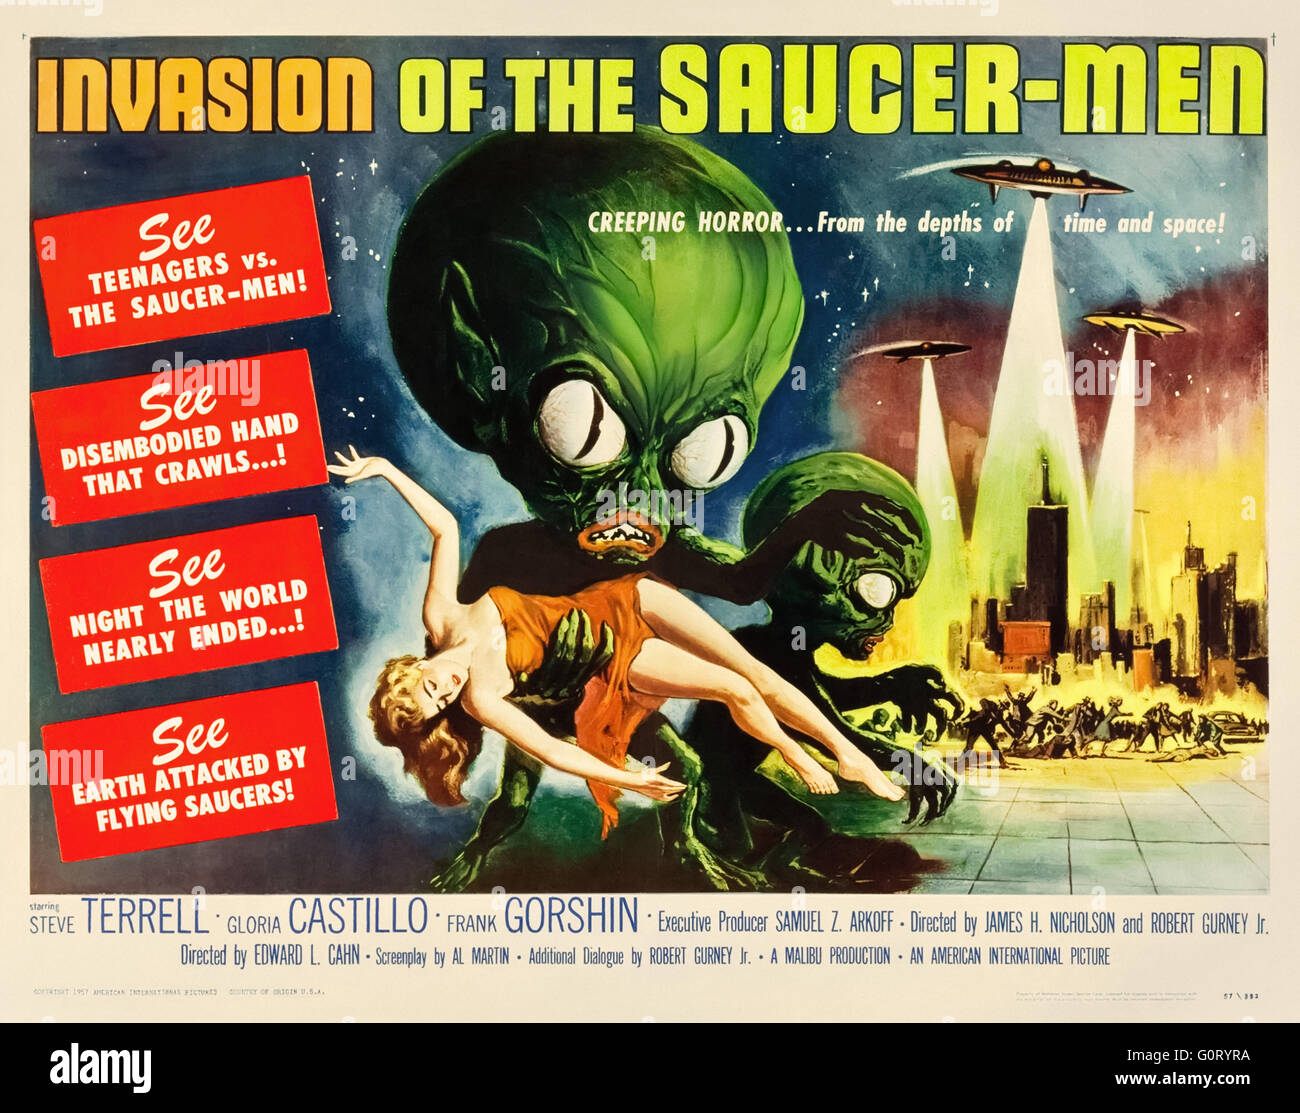 "Invasion der Untertasse-Men" (1957) unter der Regie von Edward L. Cahn und Darsteller Steven Terrell, Gloria Castillo und Frank Gorshin. Siehe Beschreibung für mehr Informationen. Stockfoto